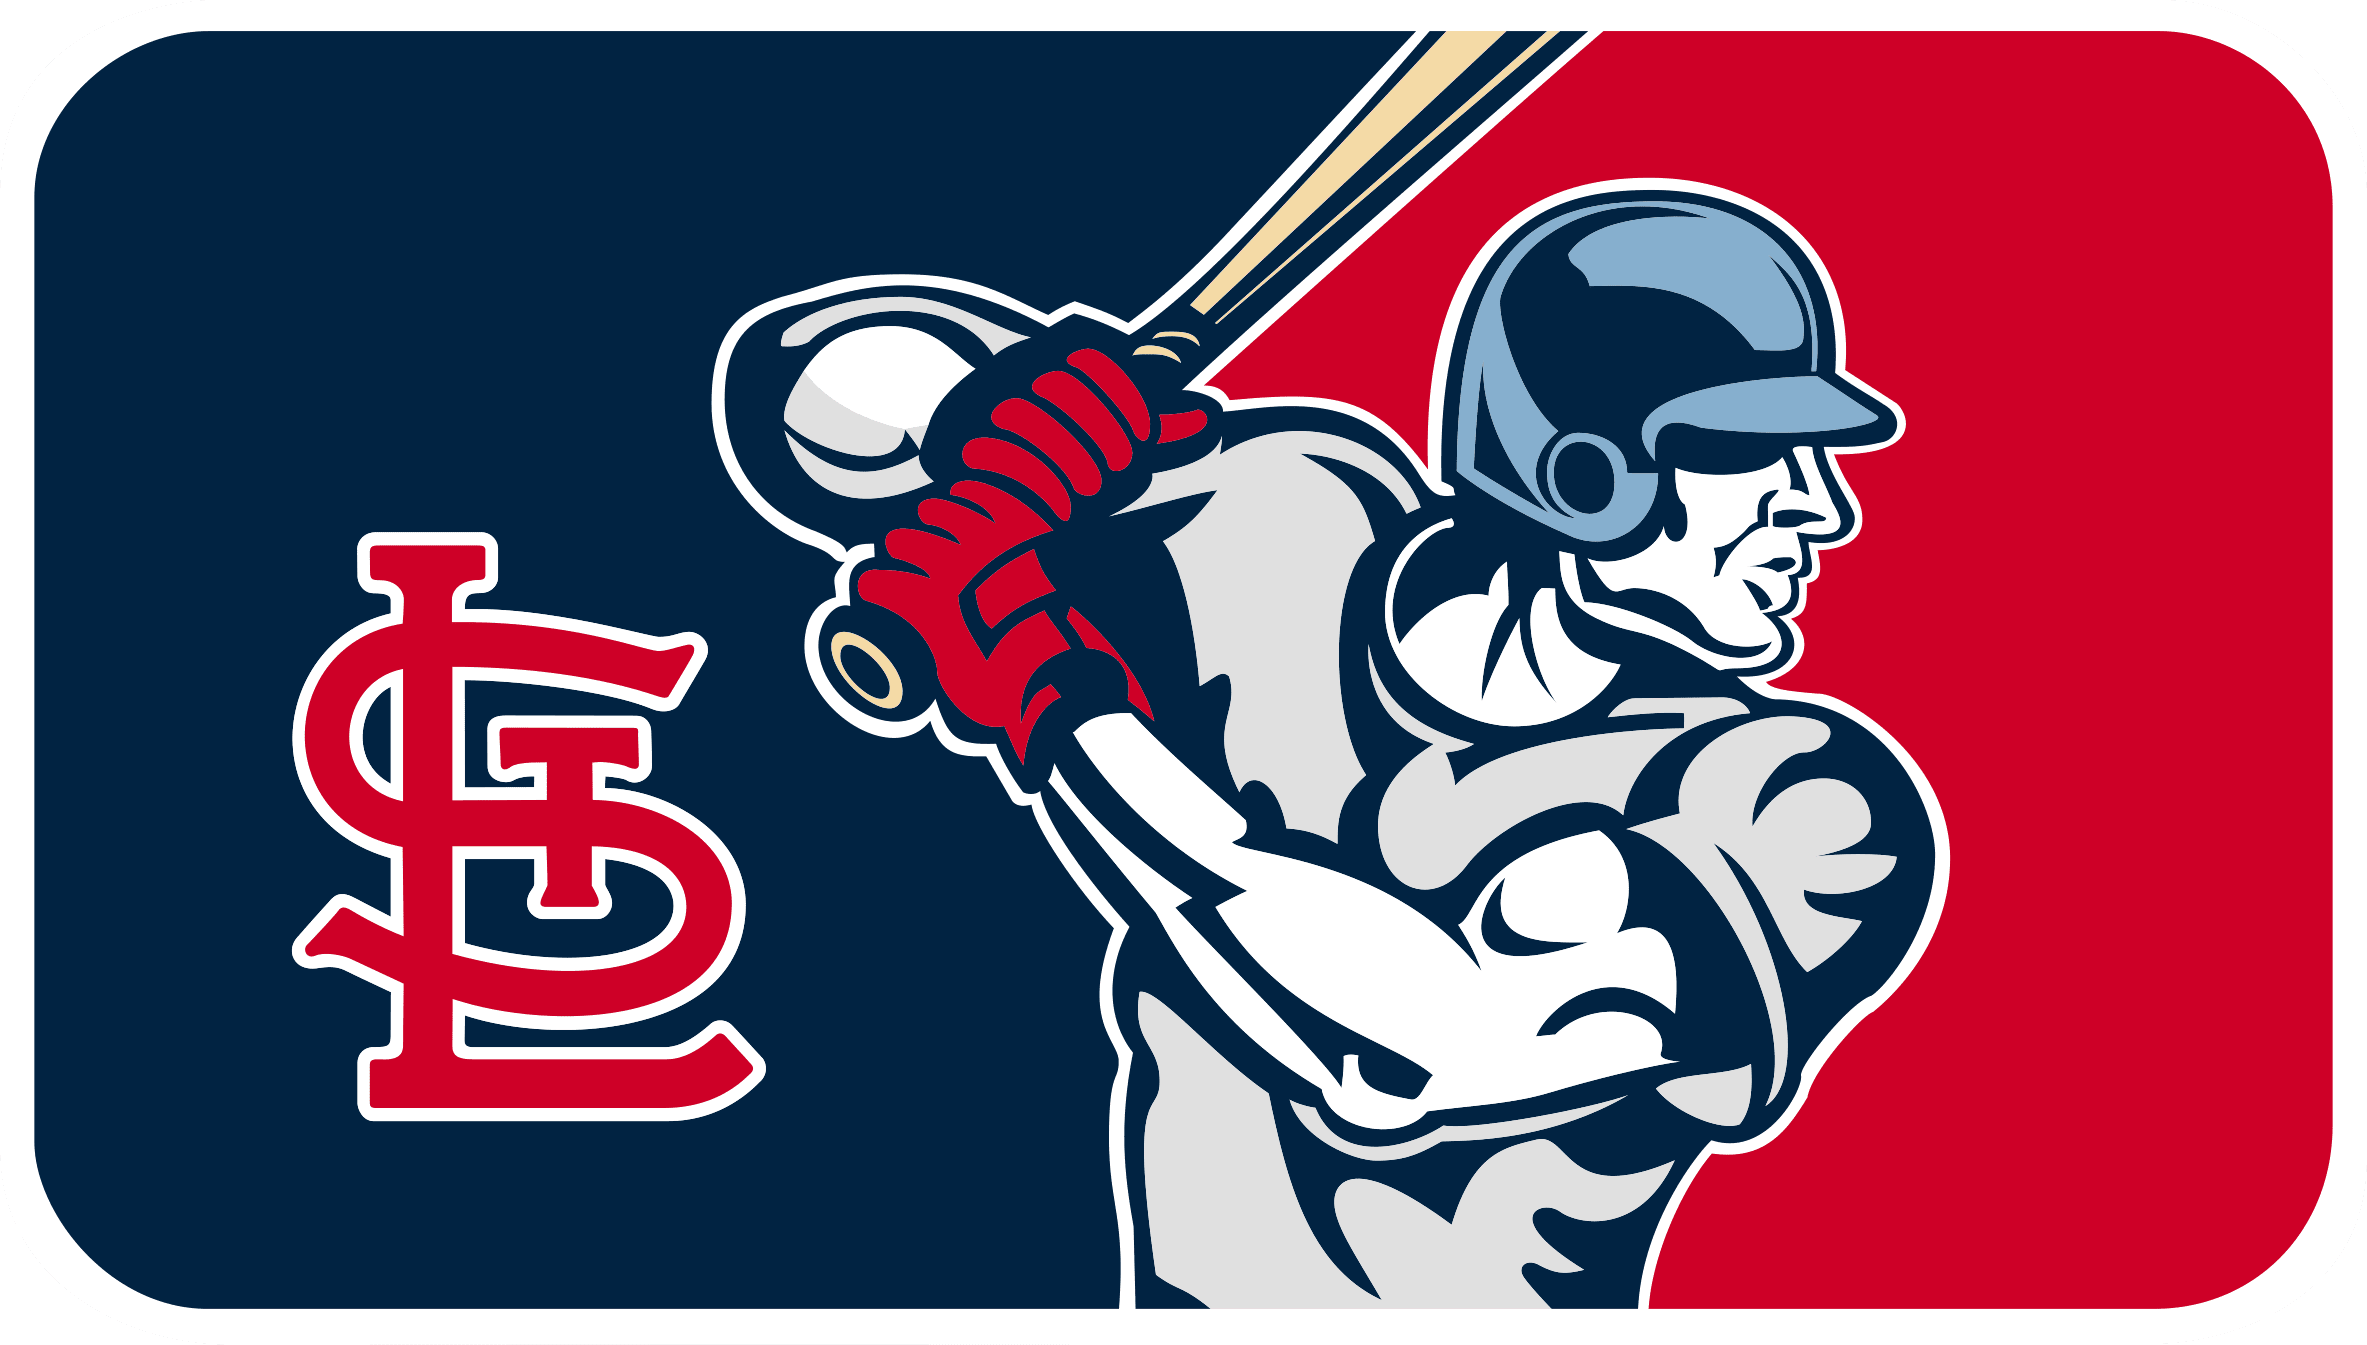 St. Louis Cardinals Logo Svg, St. Louis Cardinals Svg, MLB Svg, Sport Svg,  Png Dxf Eps File